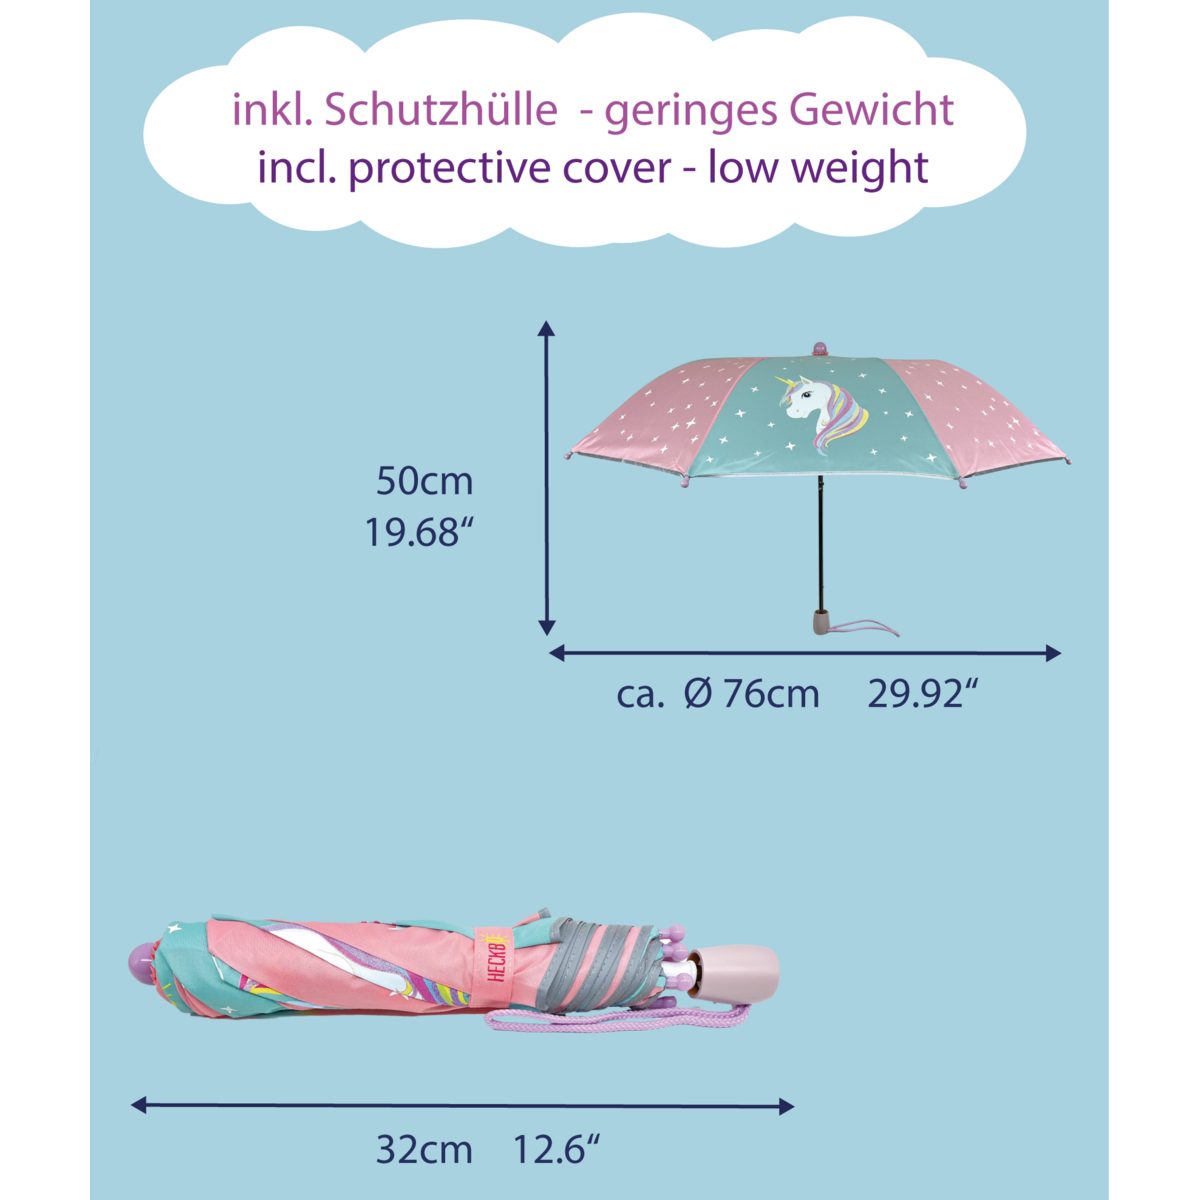 wechselt die Kinder Taschenregenschirm Regen Farbe Einhorn, HECKBO Magic Regenschirm - bei